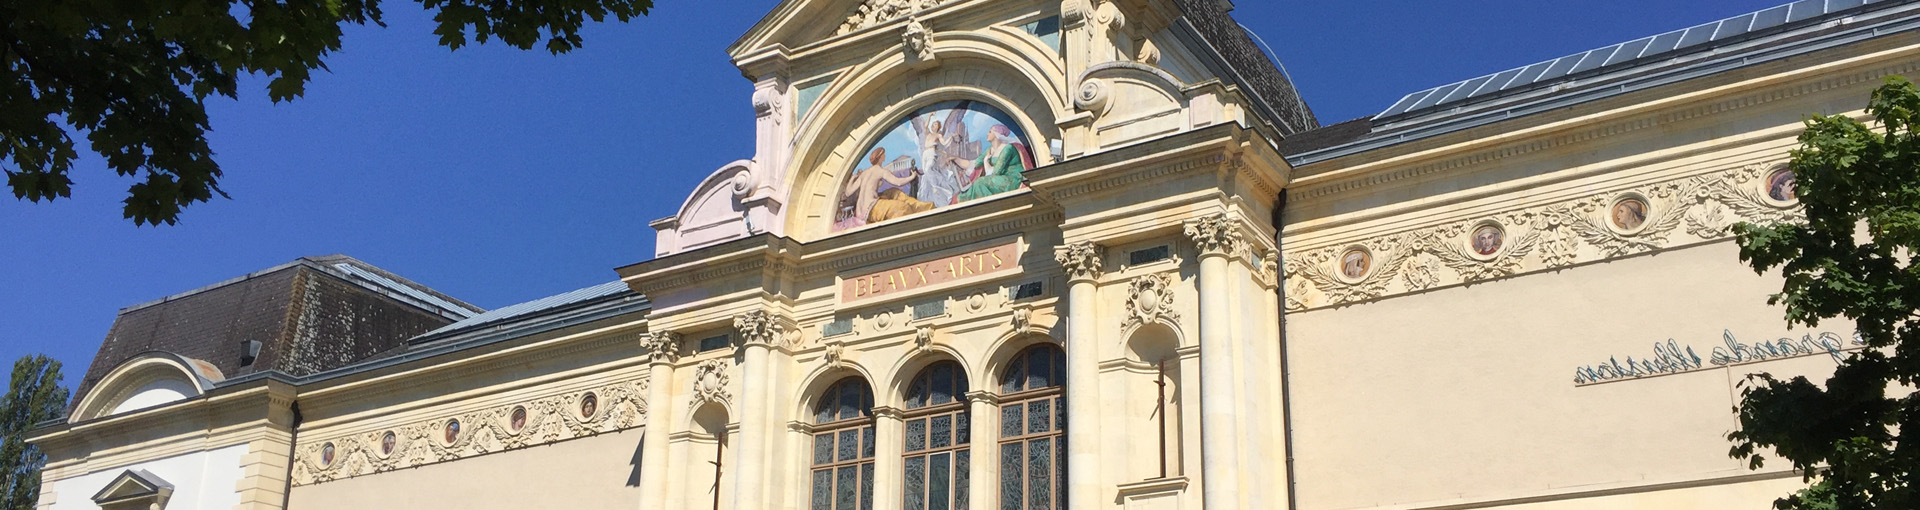 La façade du Musée d'art et d'histoire de Neuchâtel